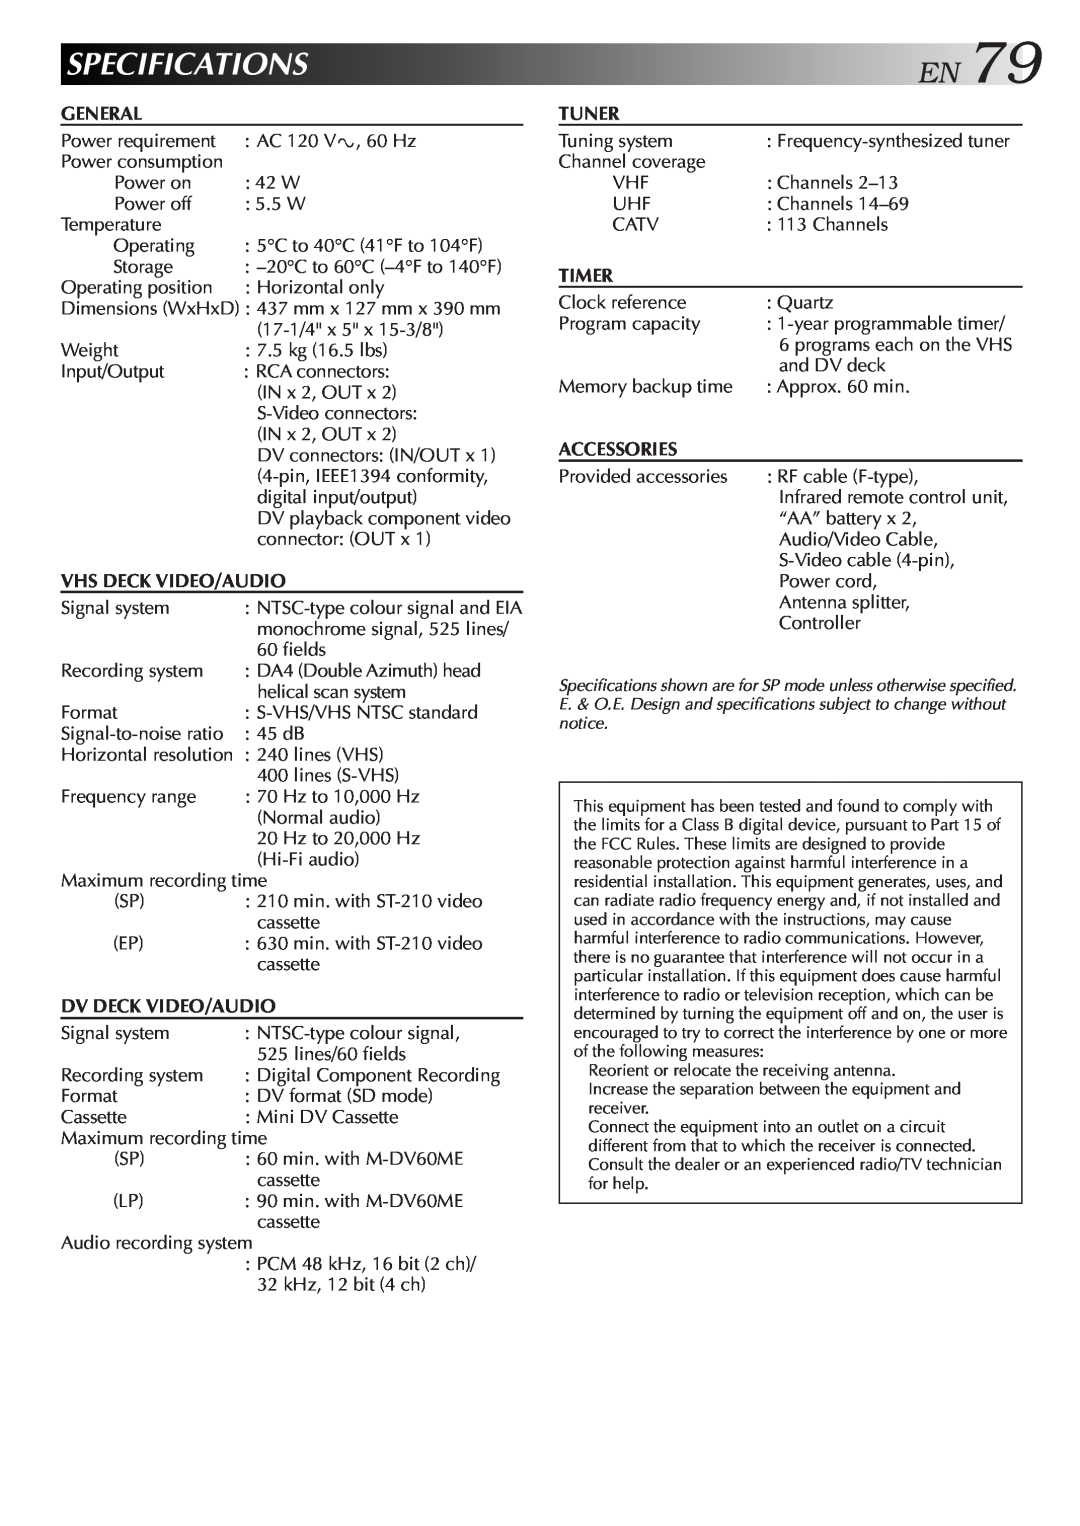 JVC Model HR-DVS1U manual Specifications, EN79 